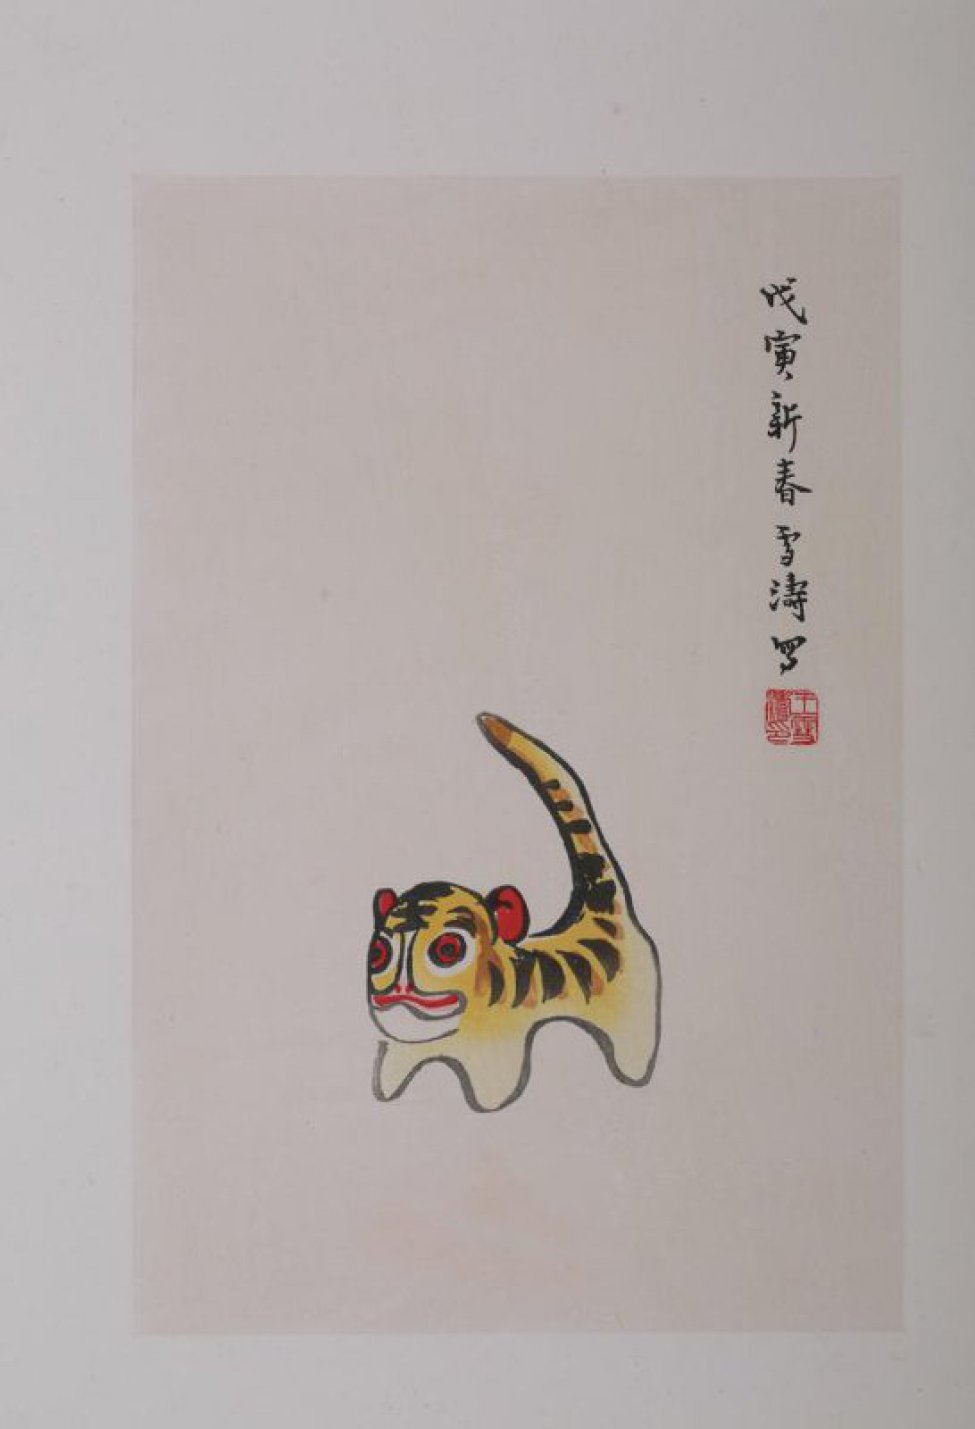 Изображен тигр, стоящий на тупых коротких лапах с поднятым вверх хвостом. Голова круглая,с  красными глазами и ушами. Вверху справа 8 иероглифов.